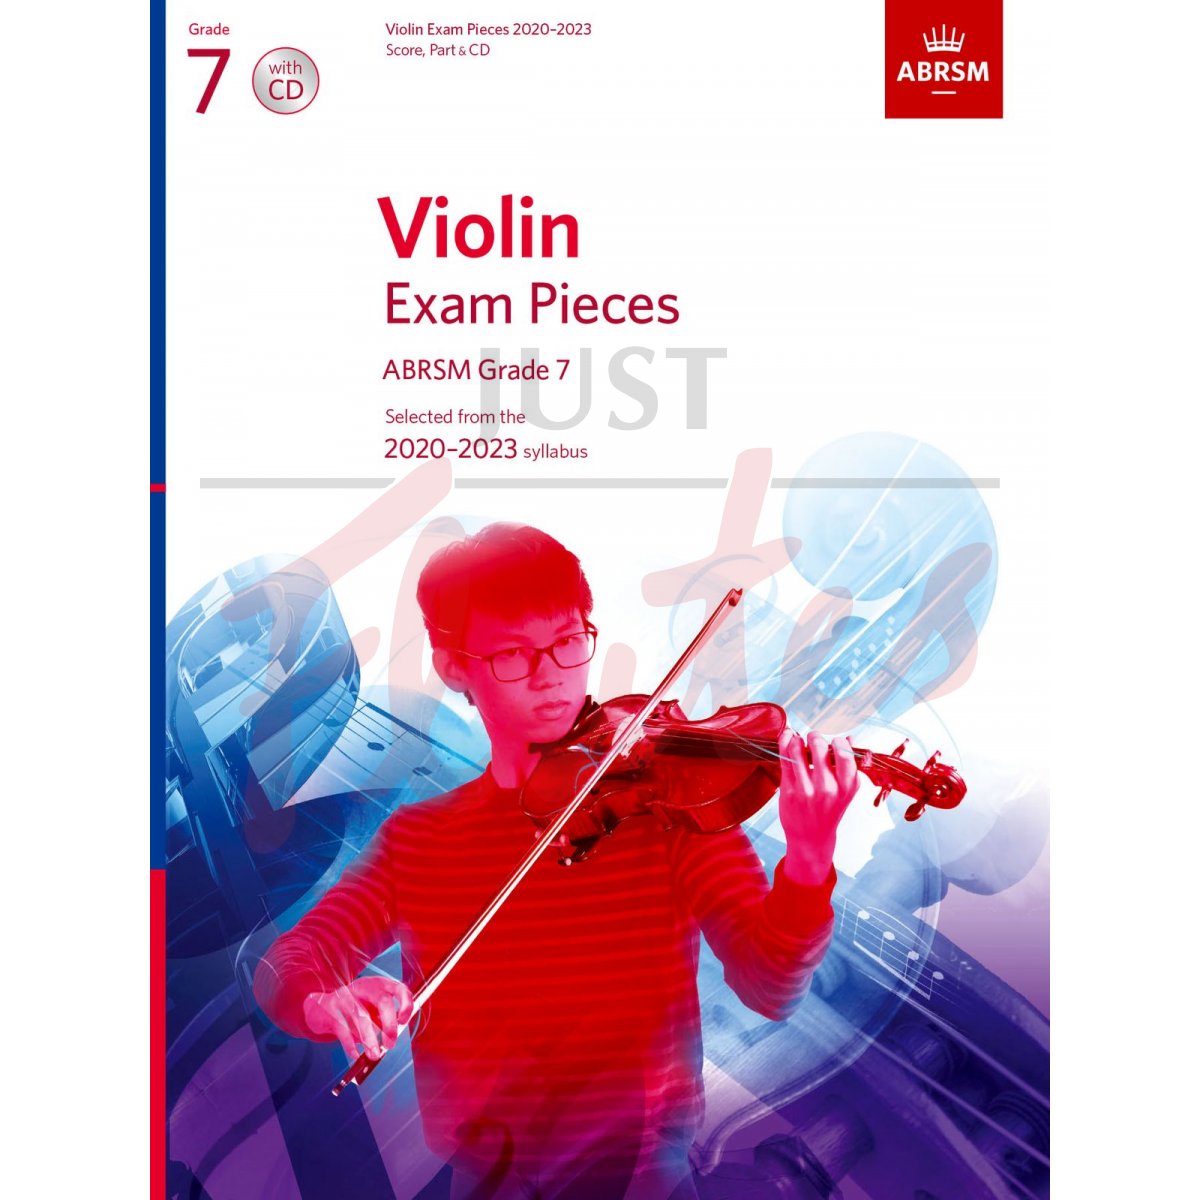 Violin Exam Pieces 2020-2023, Grade 7